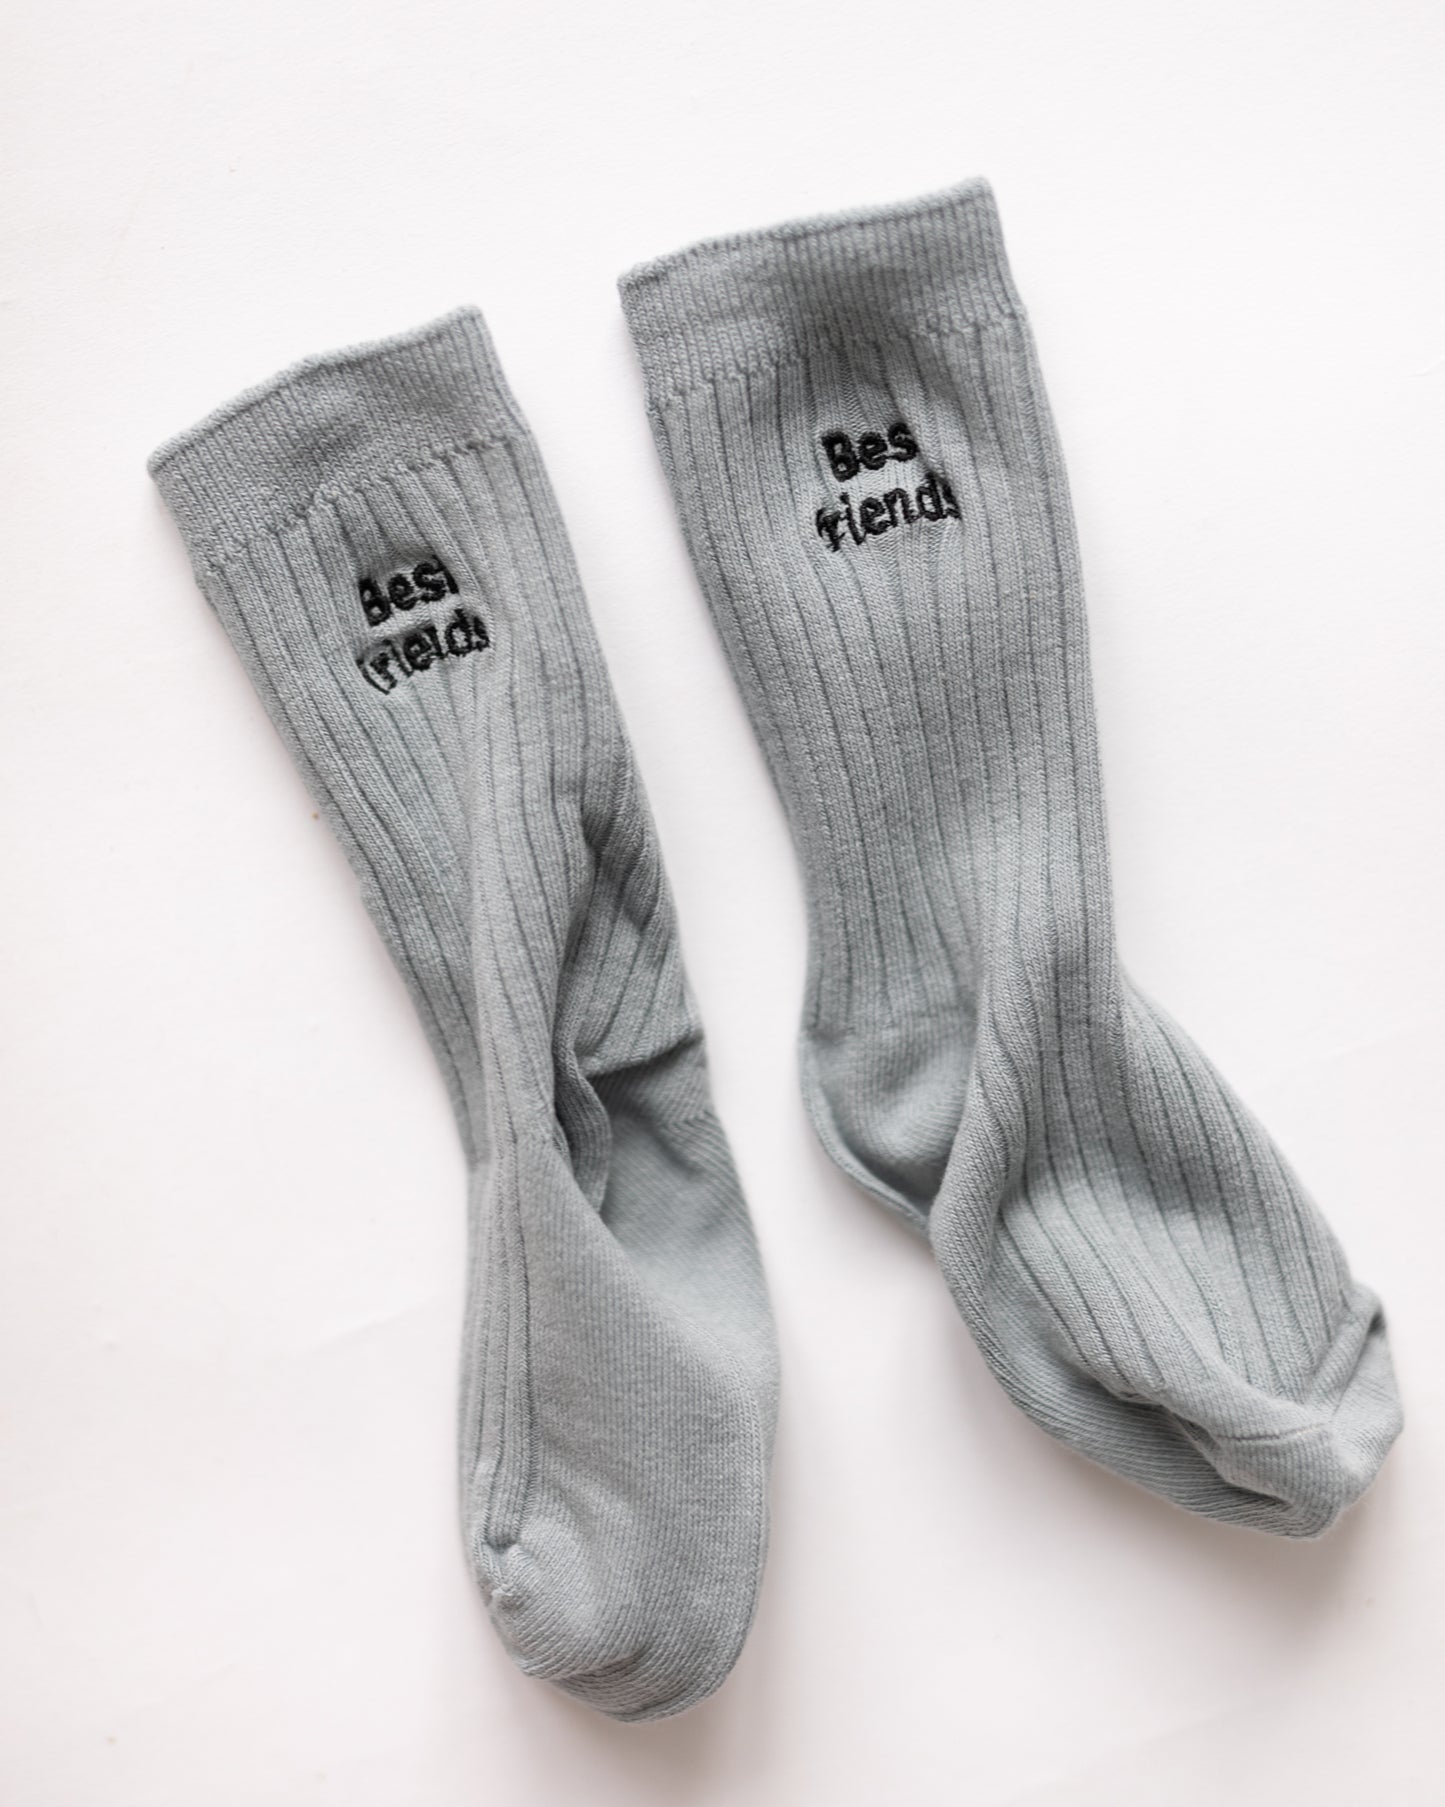 best friends socks